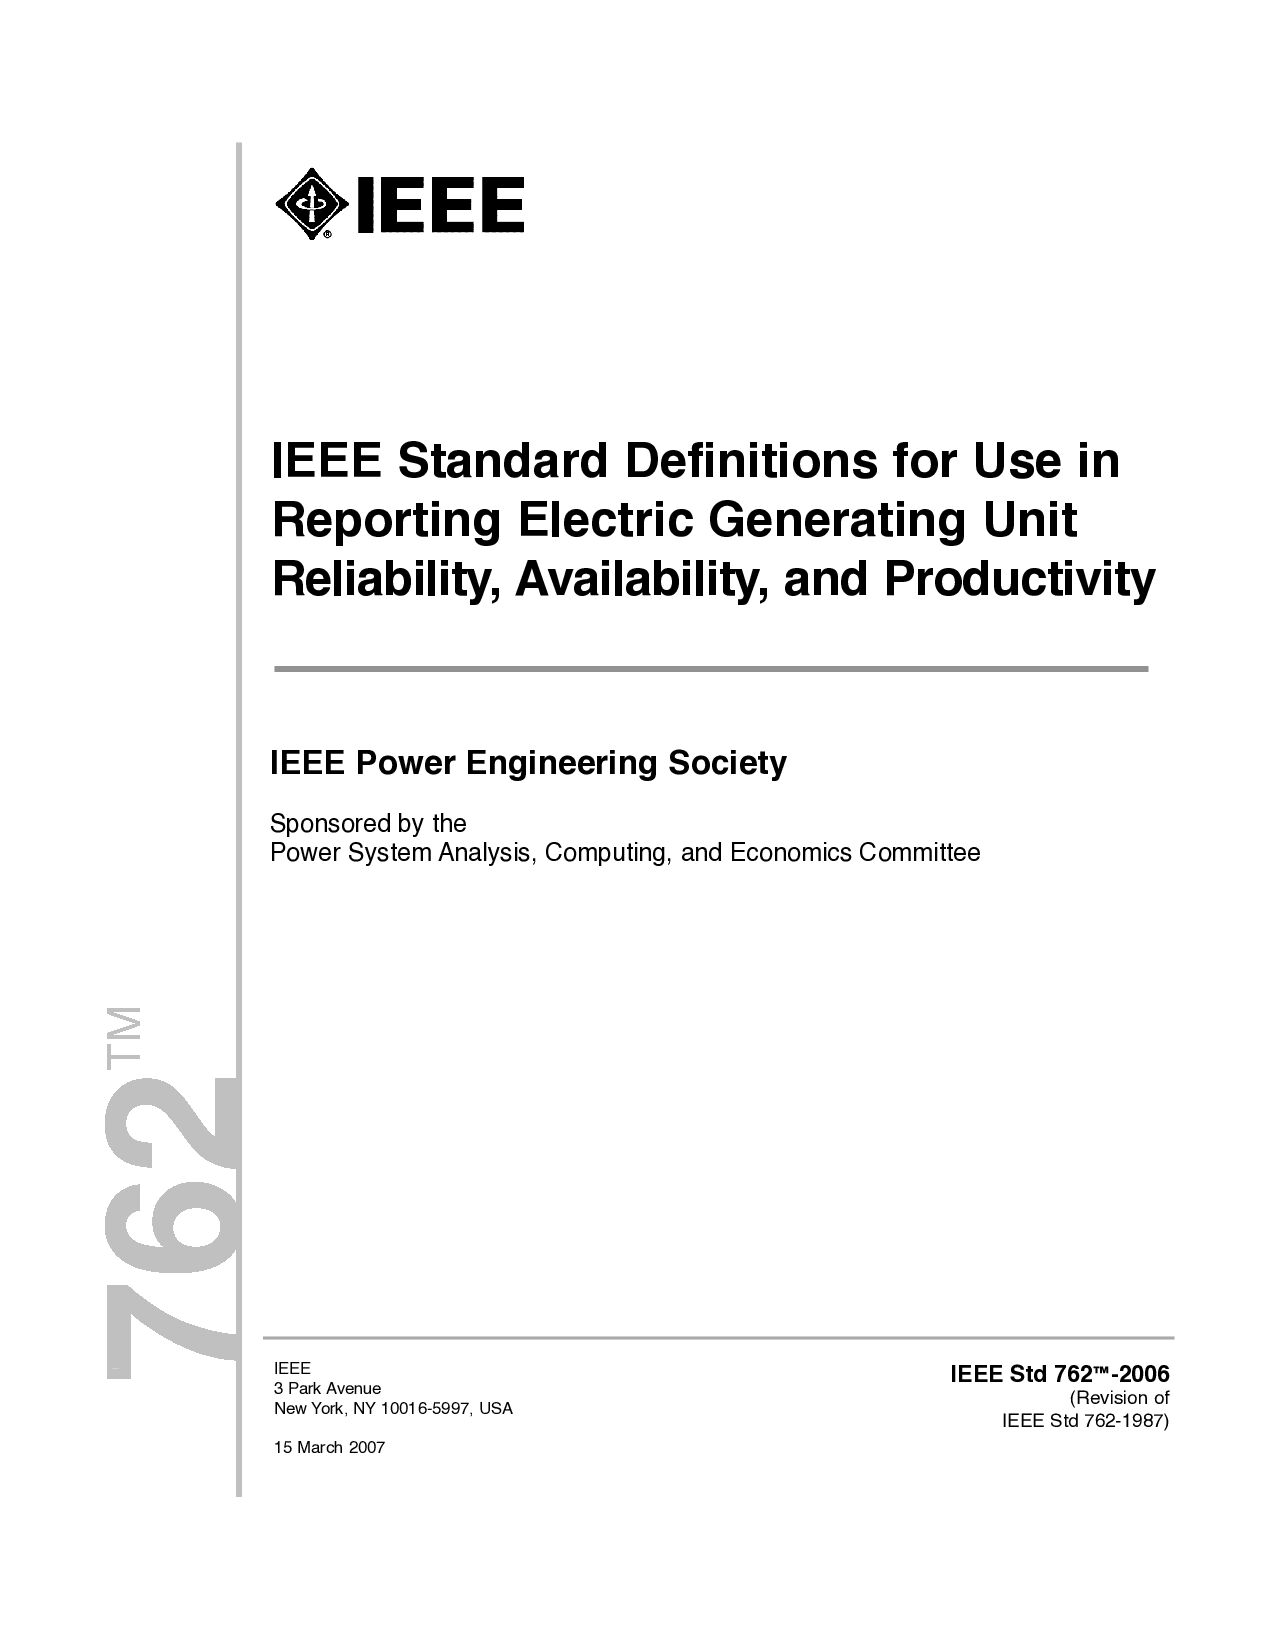 IEEE 762:2006